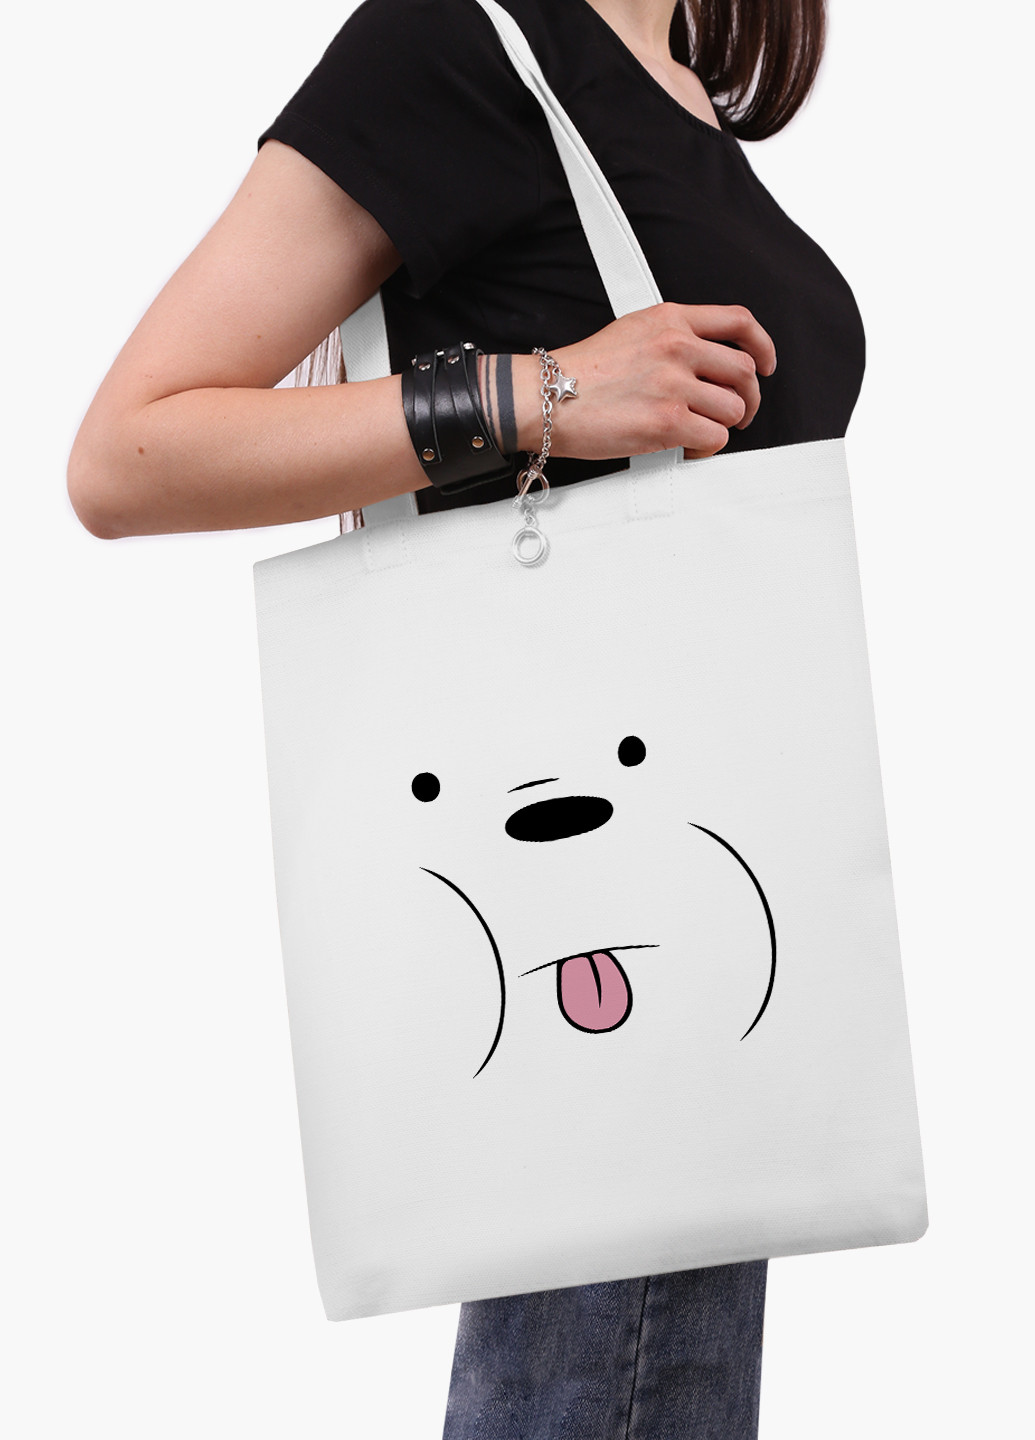 Еко сумка шоппер біла Білий ведмідь Вся правда про ведмедів (We Bare Bears) (9227-2662-WT-2) екосумка шопер 41*35 см MobiPrint (219151229)